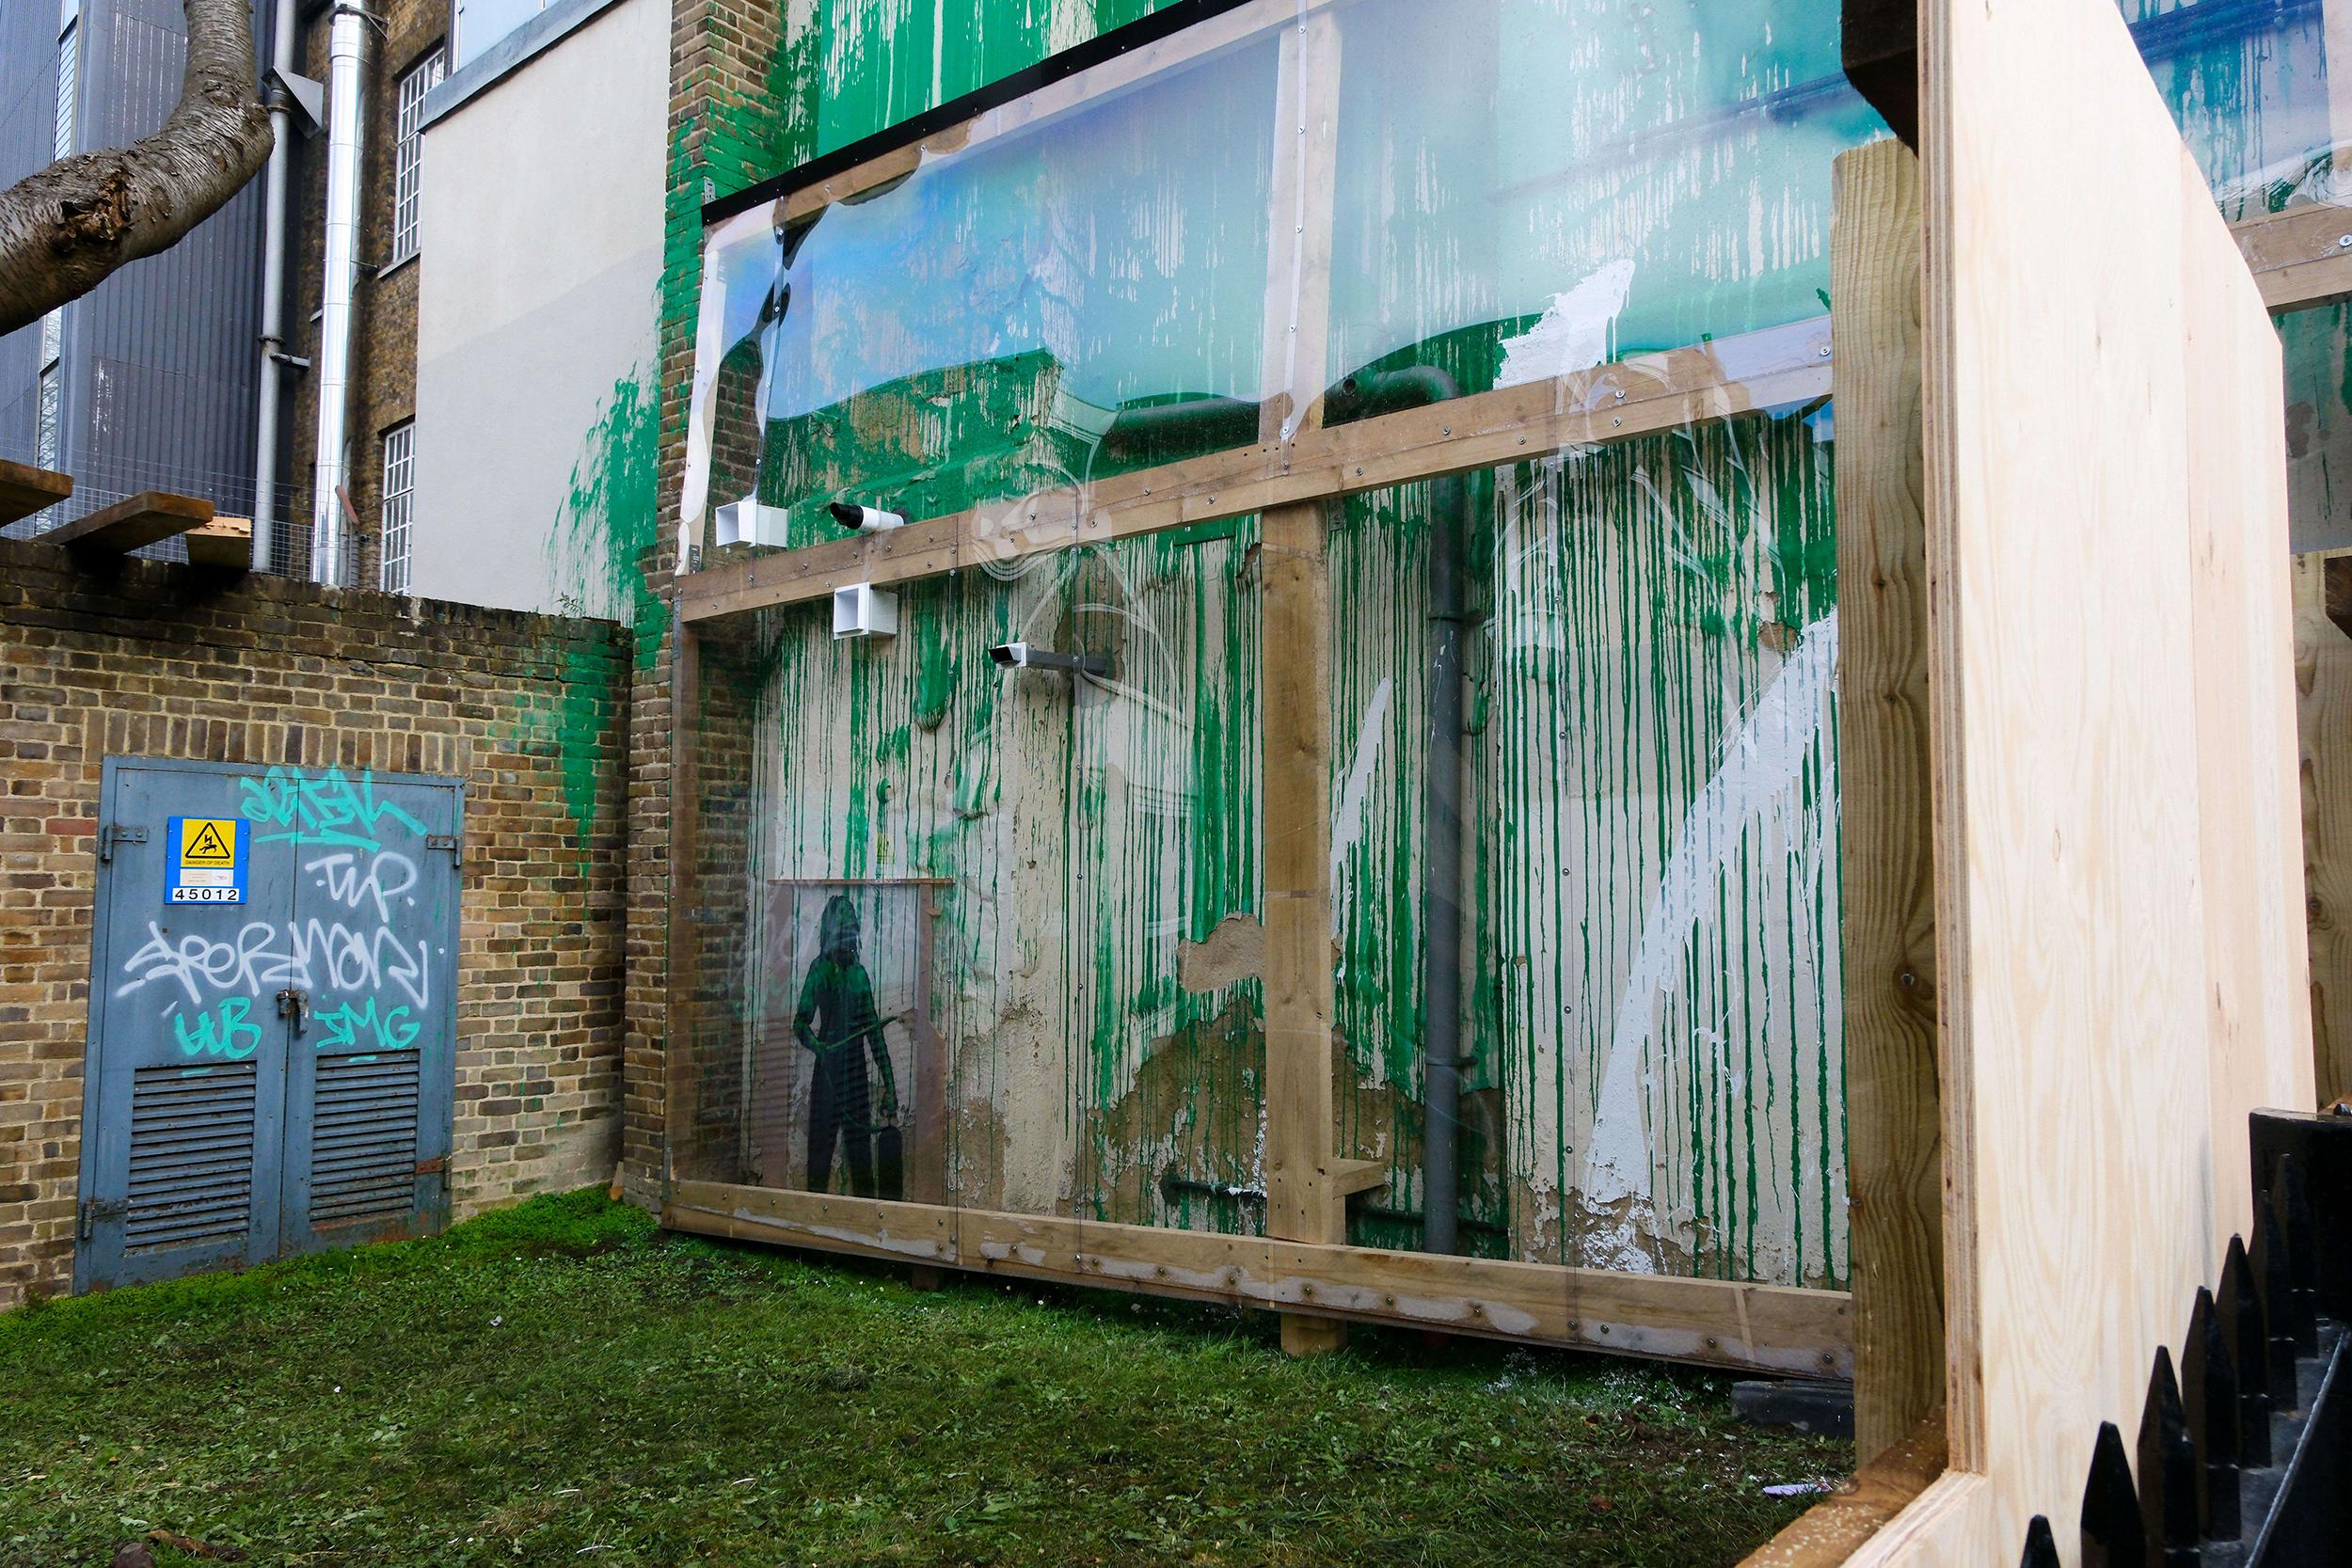 en images : vandalisée, la nouvelle œuvre londonienne de banksy mise sous bâche